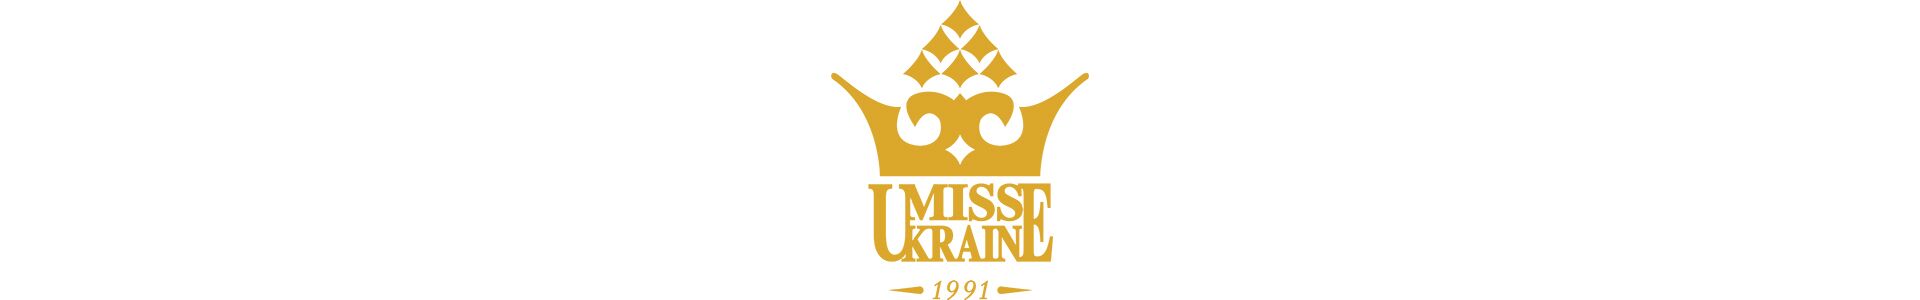 Учасниці "Міс Україна-2018" взяли участь у зйомці фільму "Продюсер".